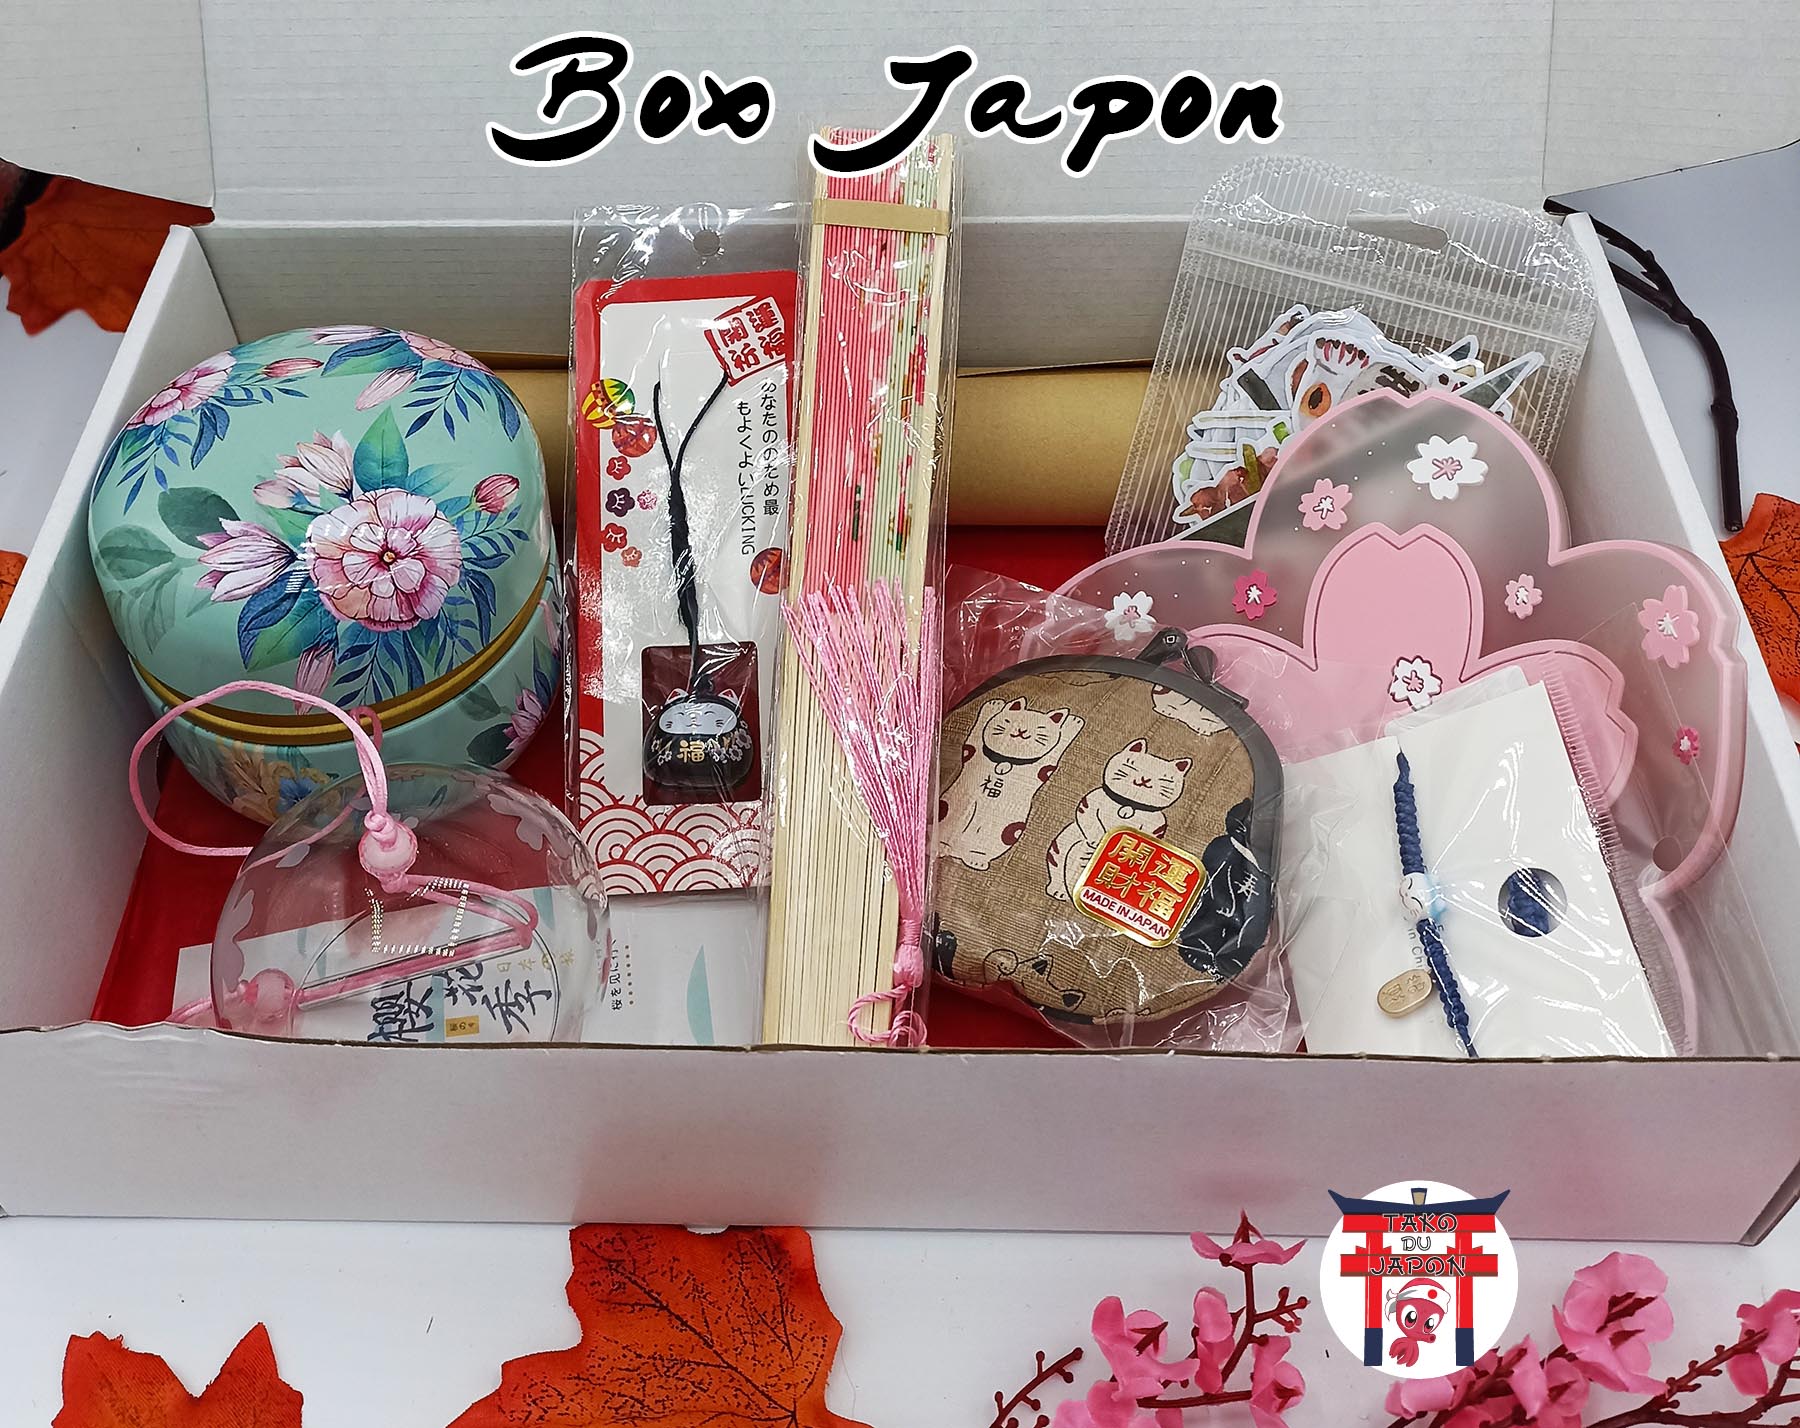 LA PLUS BELLE BOX JAPON ! - UNBOXING